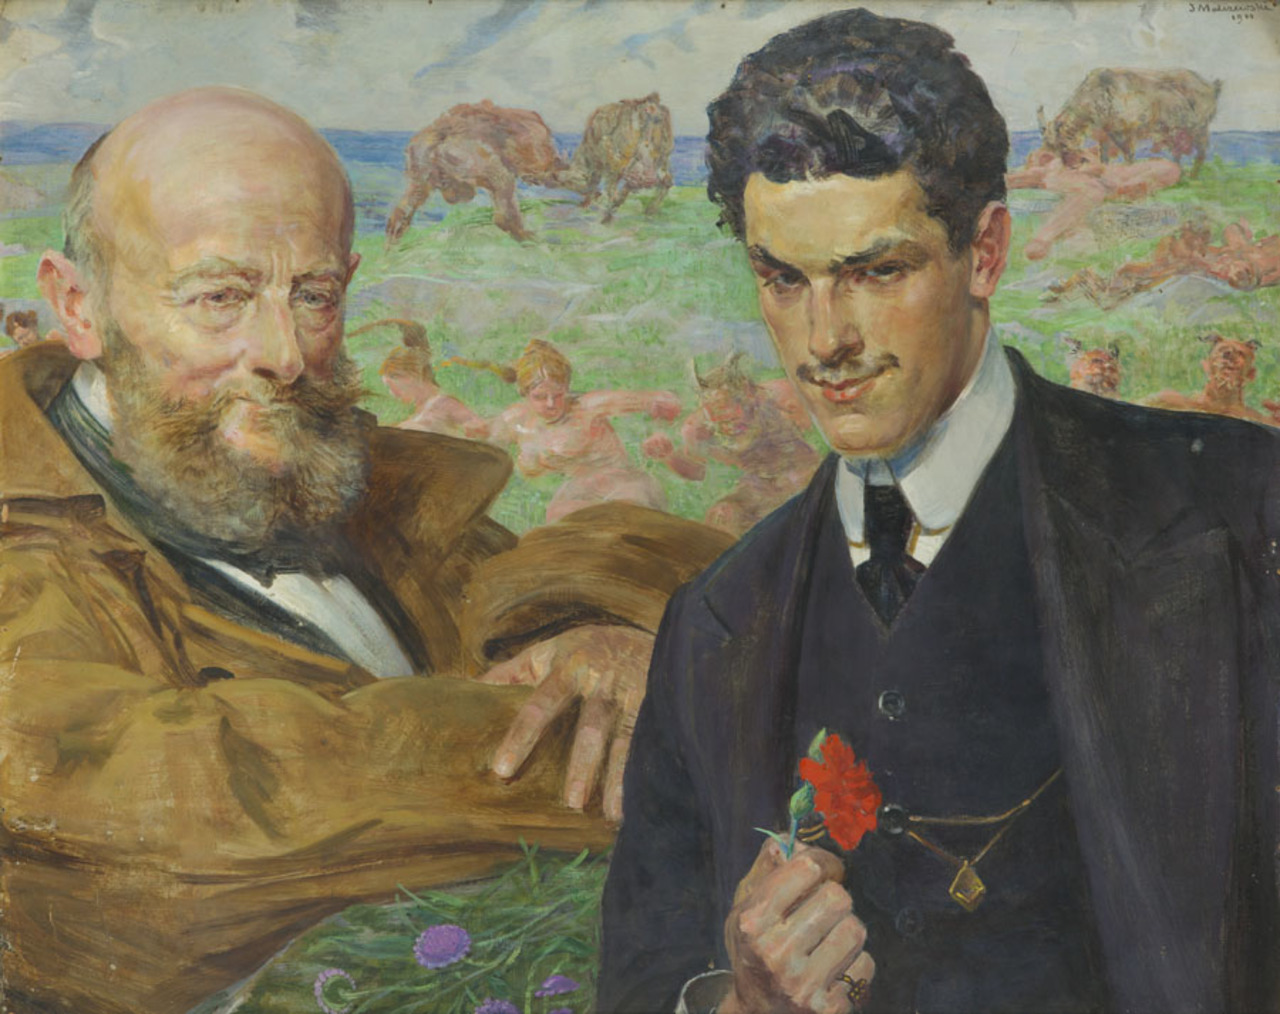 Jacek Malczewski (1854-1929), "Alegoria doświadczenia i młodości", 1911 rok, wystawa Pittsburgh, źródło: Desa Unicum